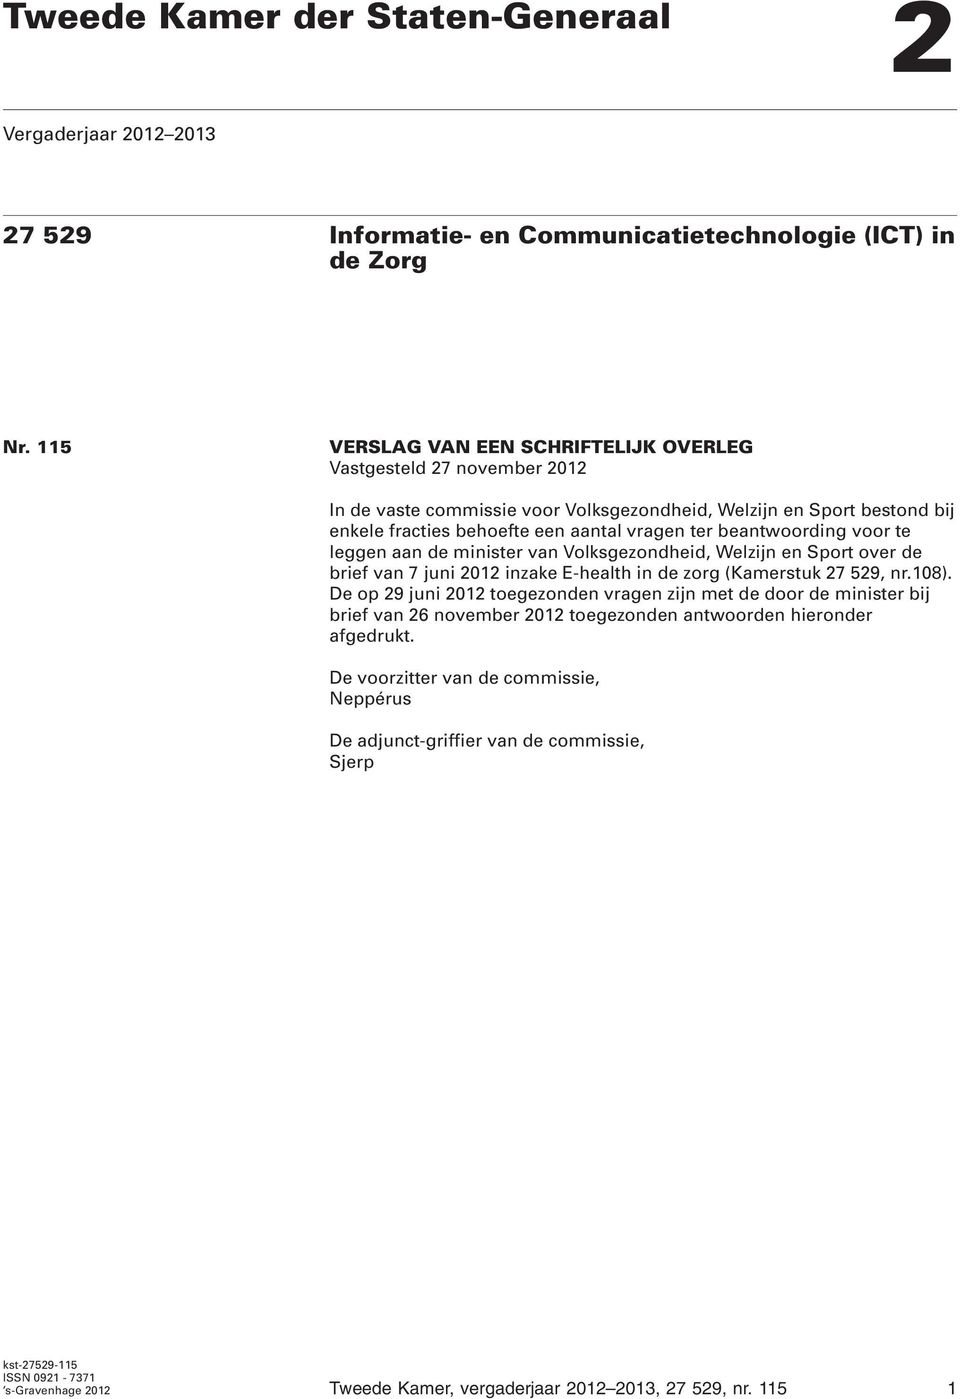 beantwoording voor te leggen aan de minister van Volksgezondheid, Welzijn en Sport over de brief van 7 juni 2012 inzake E-health in de zorg (Kamerstuk 27 529, nr.108).